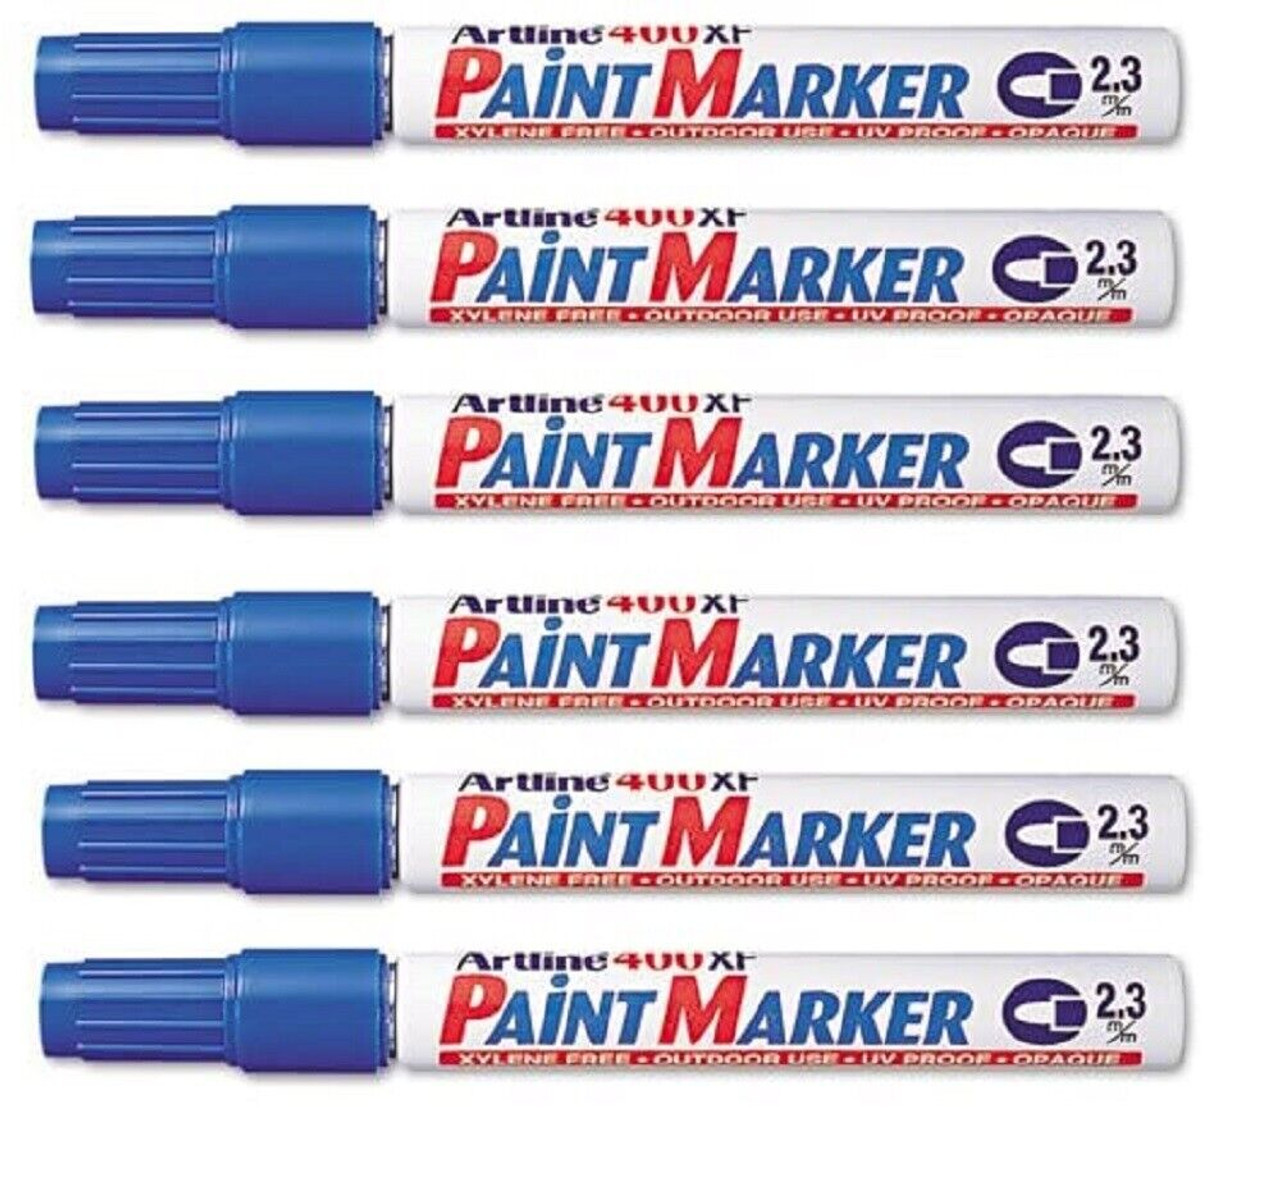 Artline 400XF Paint Marker Pen - 2.3mm Bullet Nib - Black